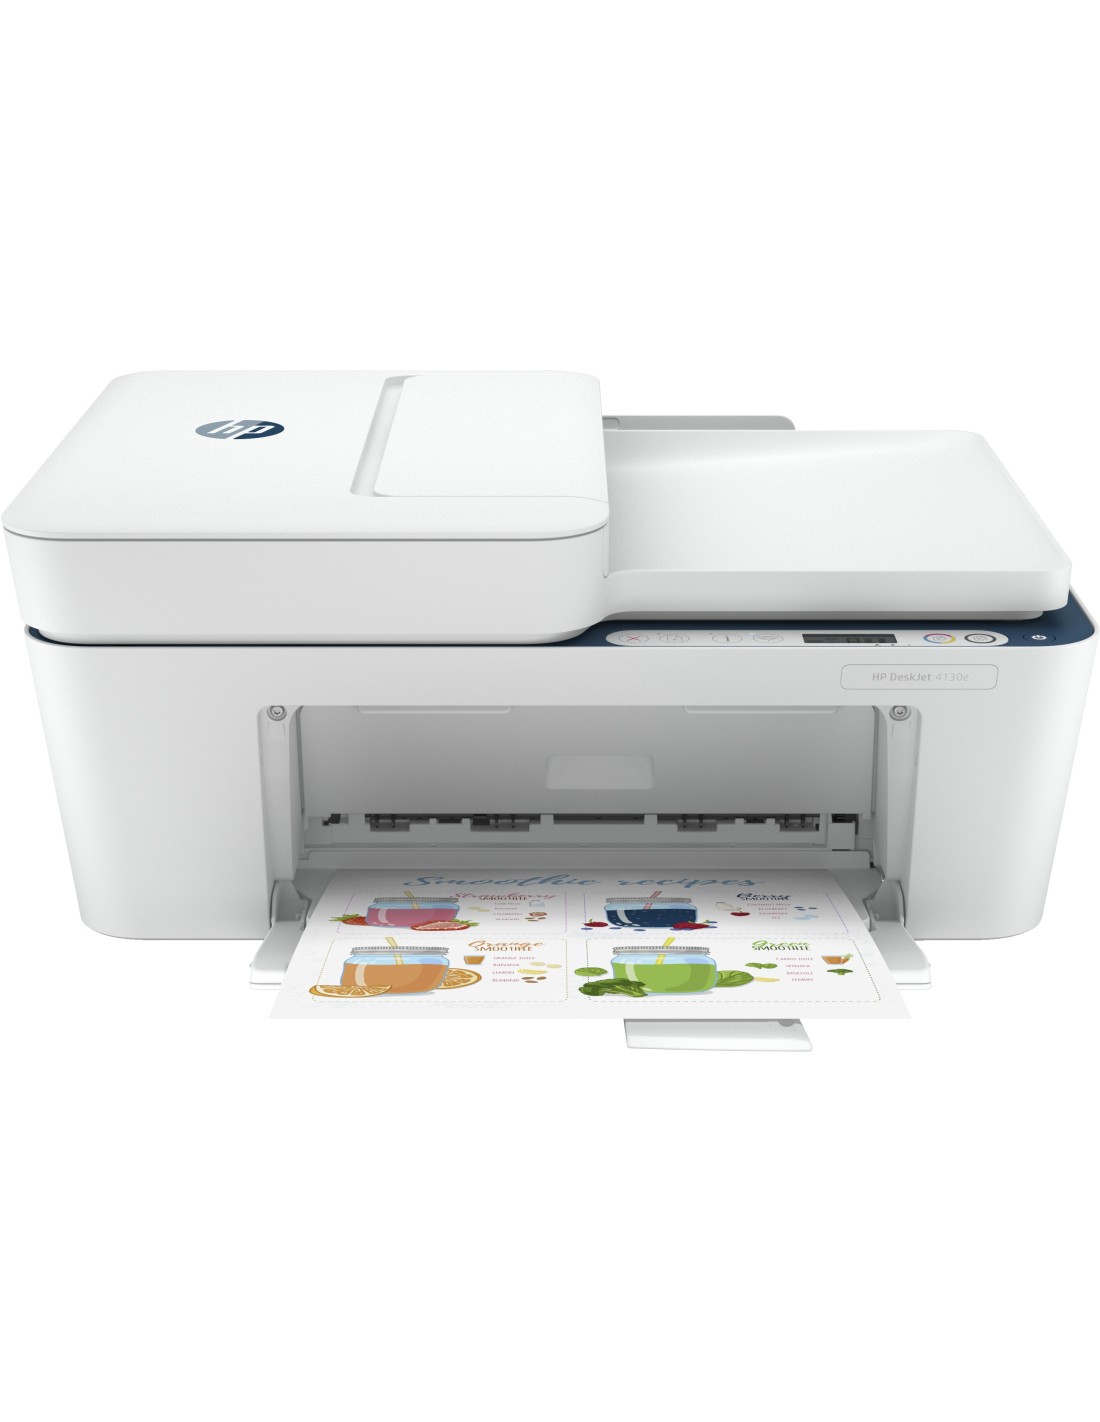 HP DeskJet Impresora multifunción HP 4130e, Color, Impresora para Hogar,  Impresión, copia, escaneado y envío de fax móvil, HP+